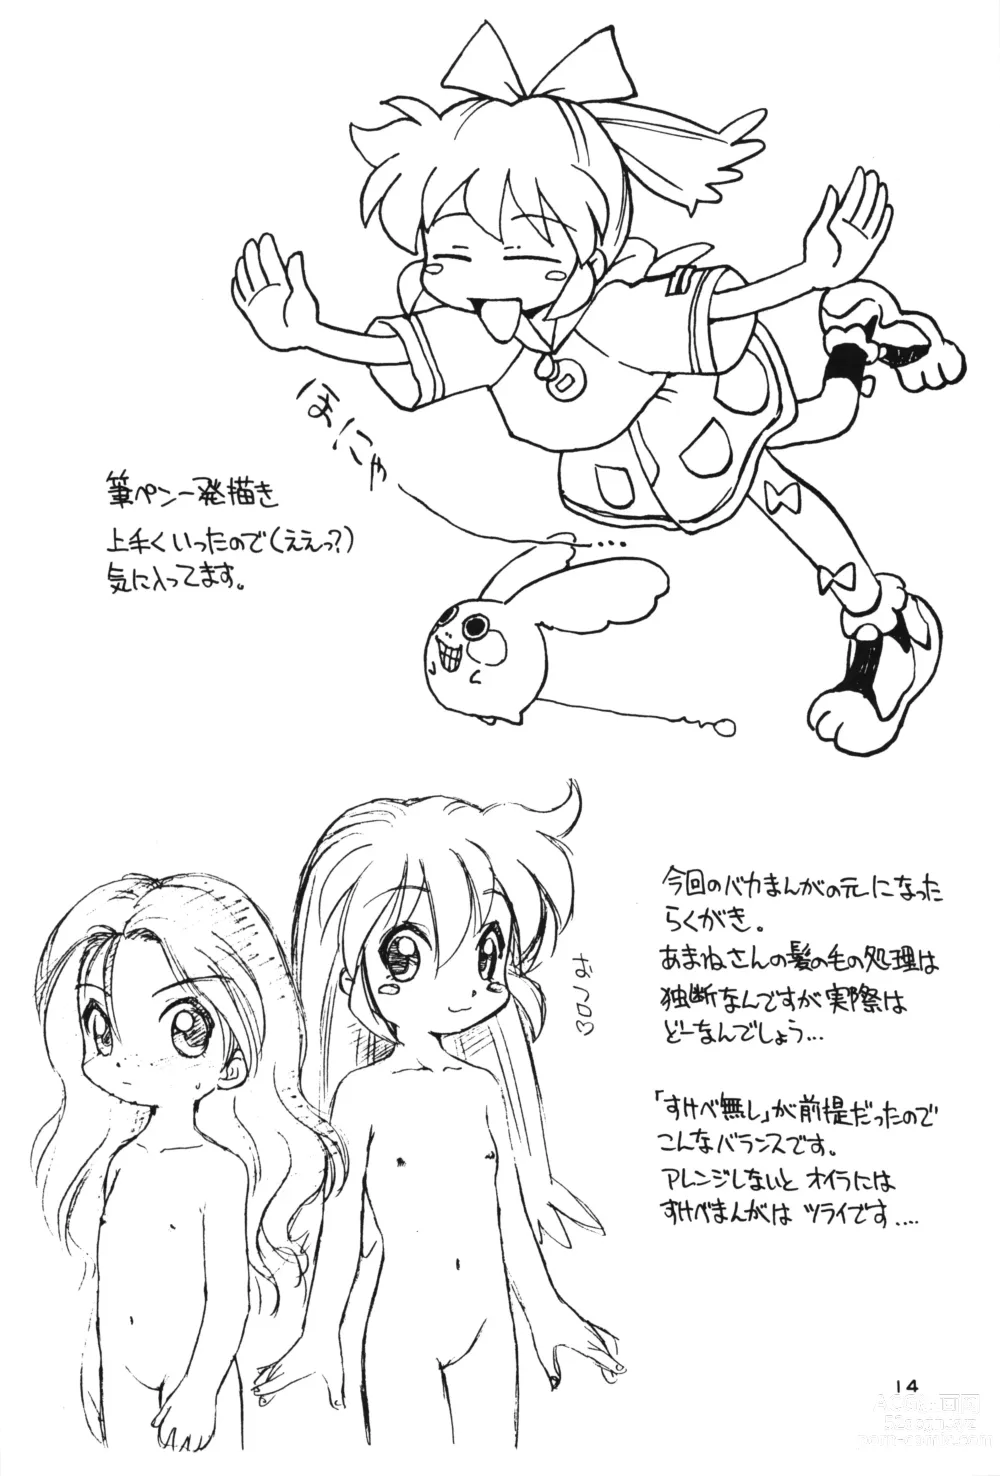 Page 13 of doujinshi Nishino-san Deban desu!